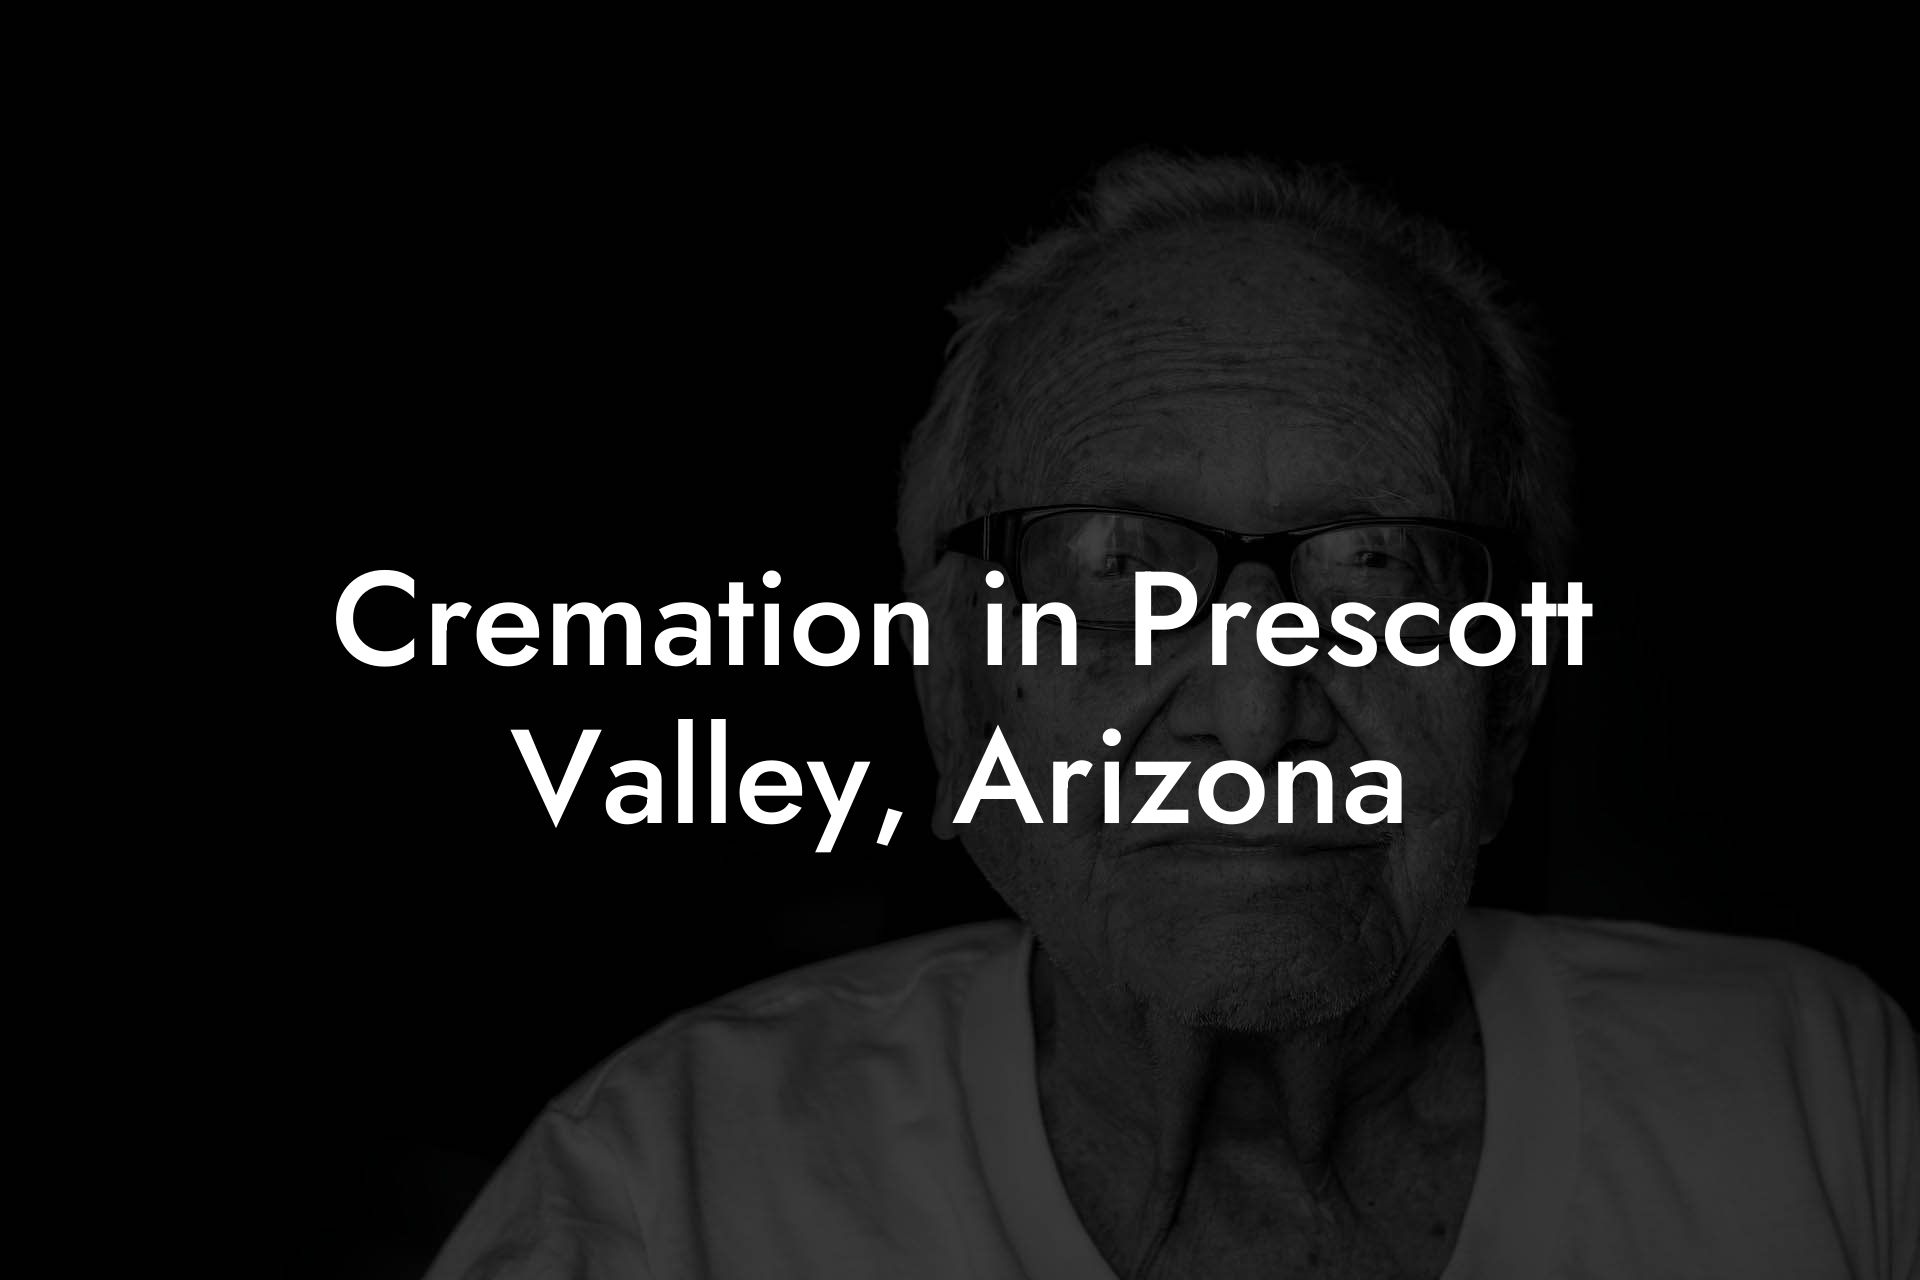 Cremation in Prescott Valley, Arizona